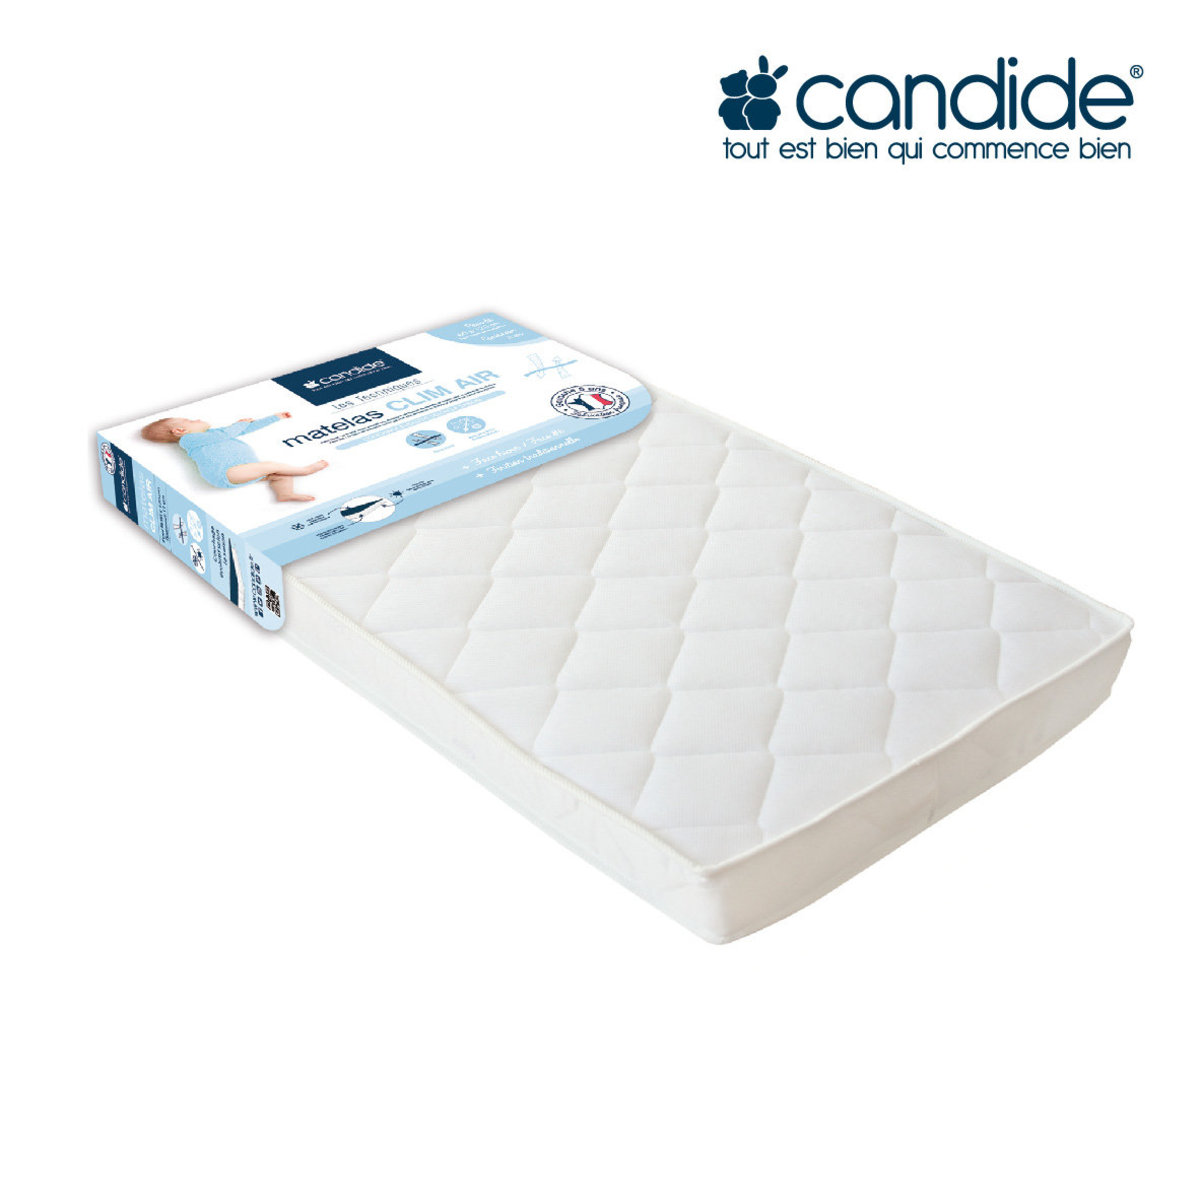 candide mattress